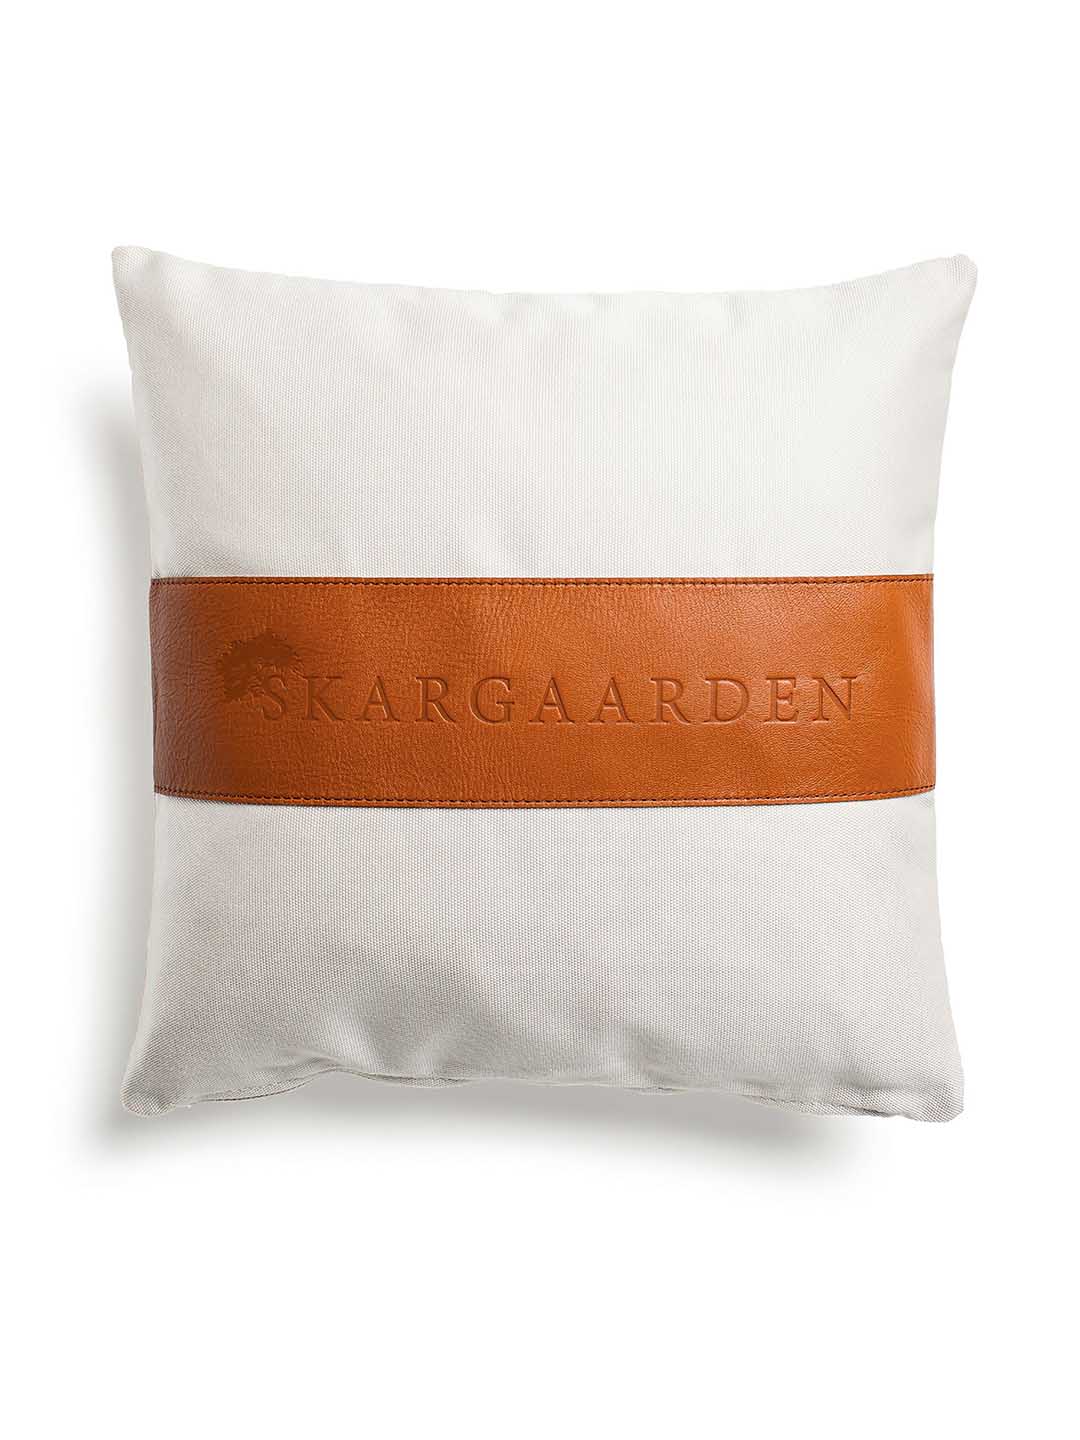 Декоративная подушка Skargaarden 50х50см белого цвета для террасы на белом фоне